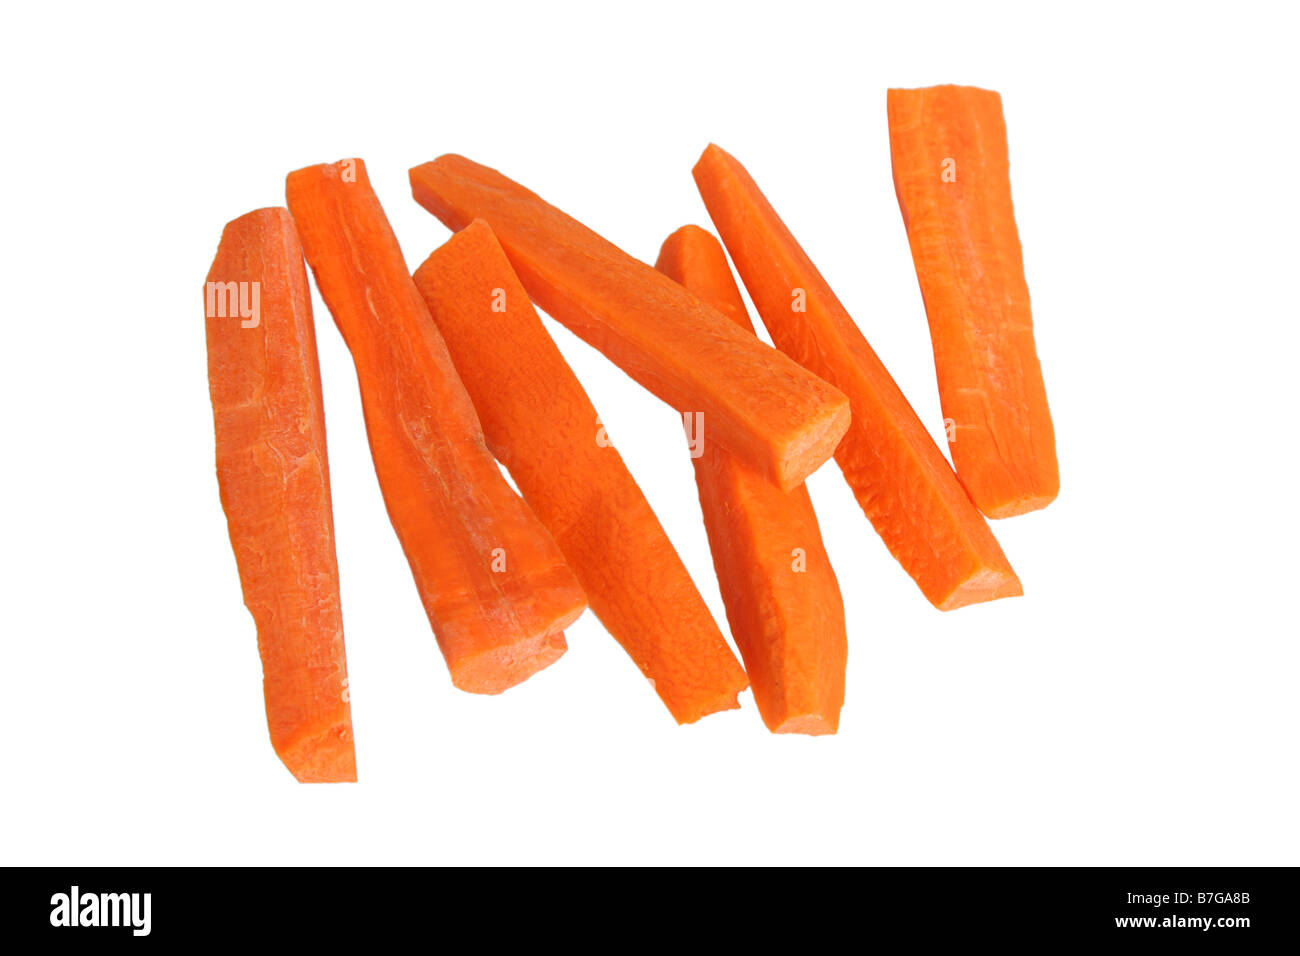 Bâtonnets de carottes découper sur fond blanc Banque D'Images